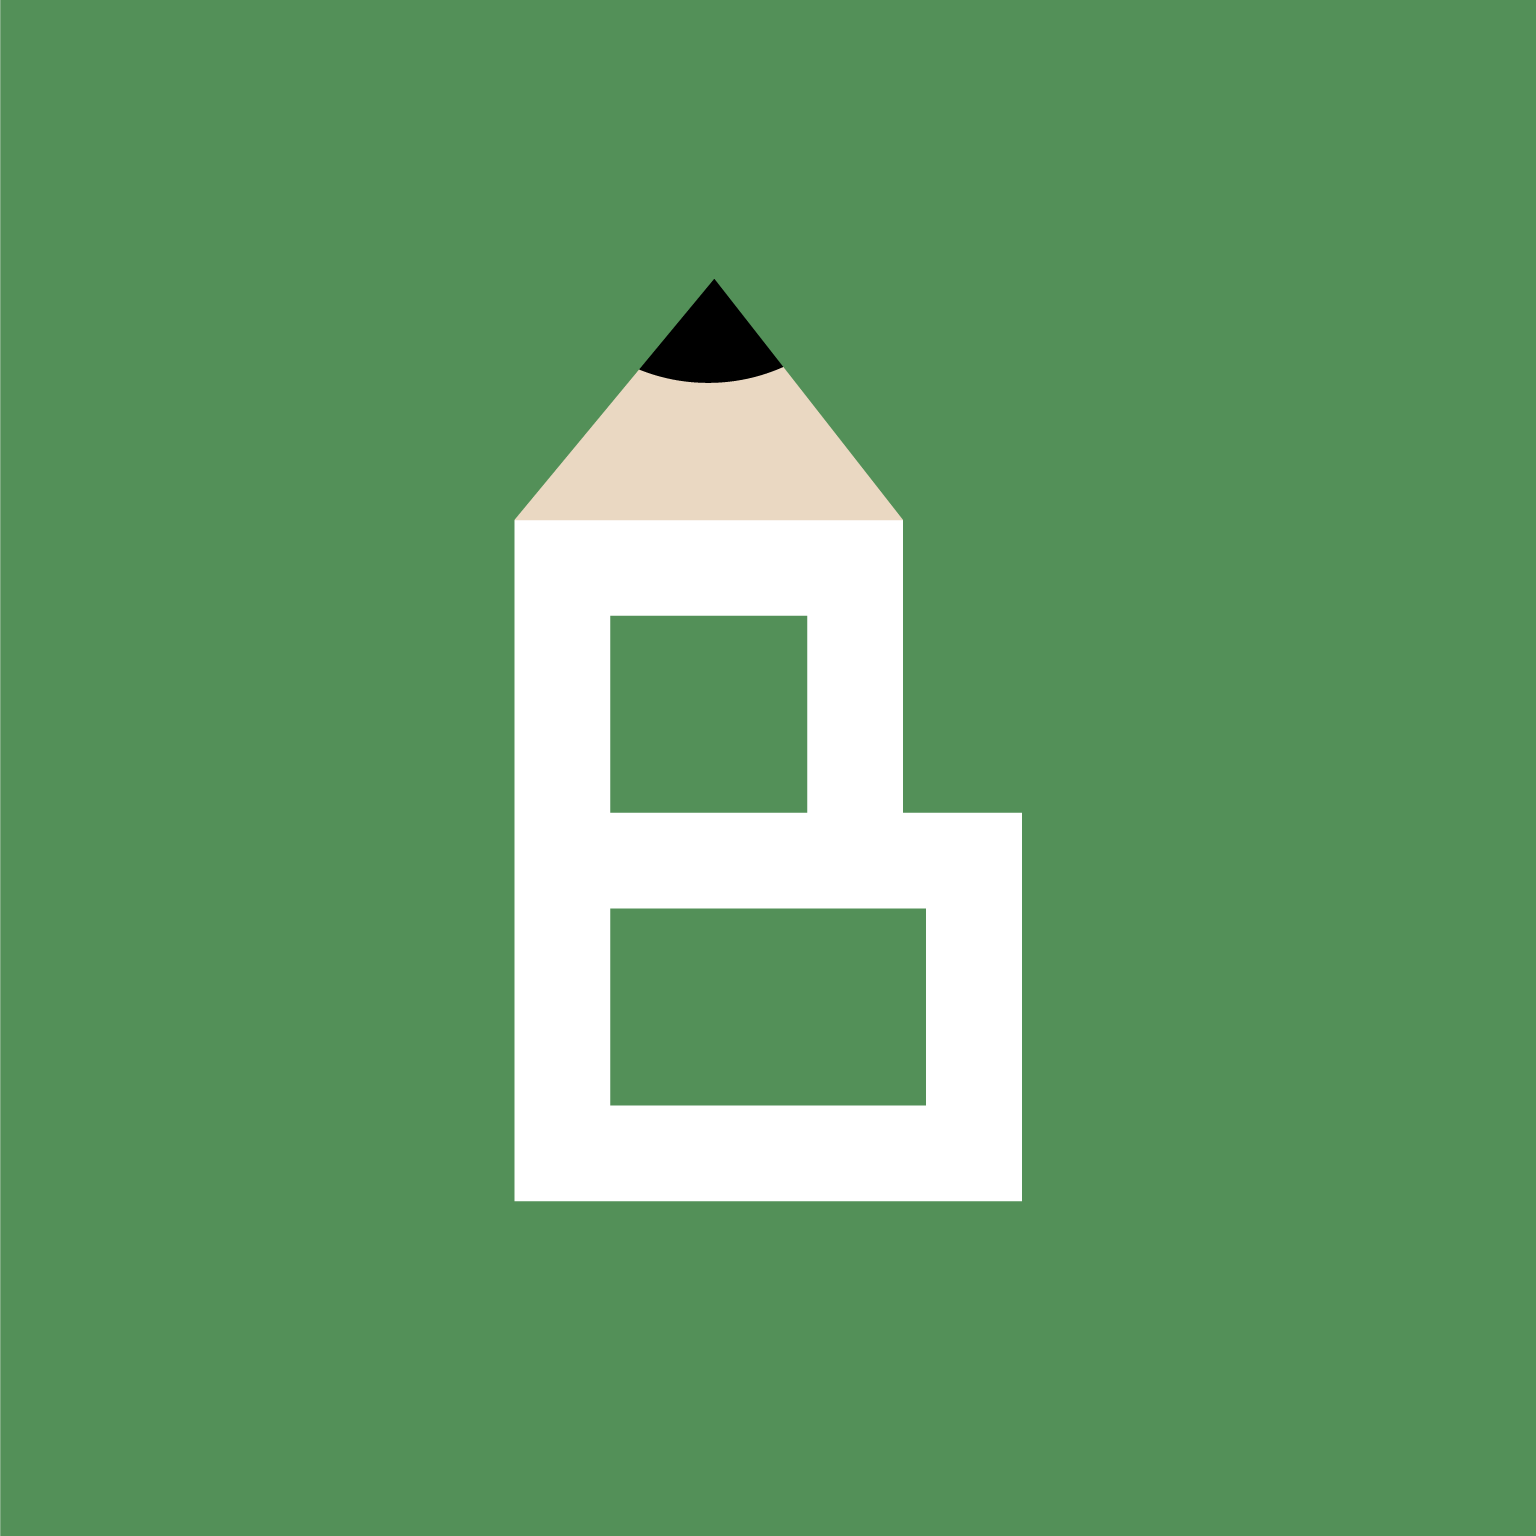 アイコンサンプルです B 鉛筆 学校 ロゴ アイコンデザイン010をイメージしたアイコンデザインです